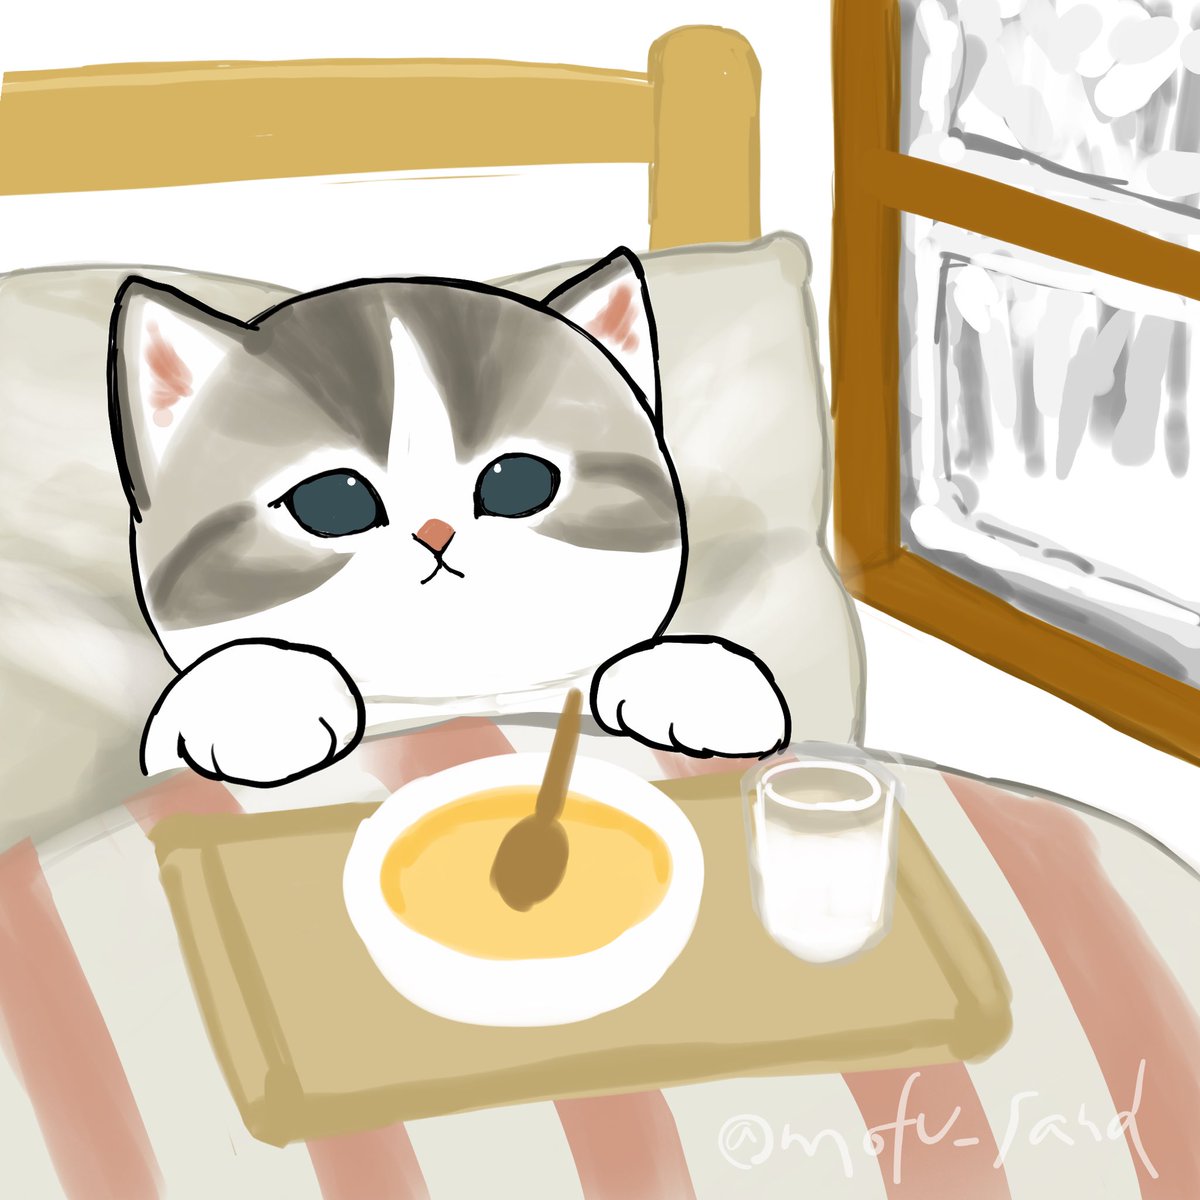 no humans animal focus cat fried egg food twitter username egg (food)  illustration images